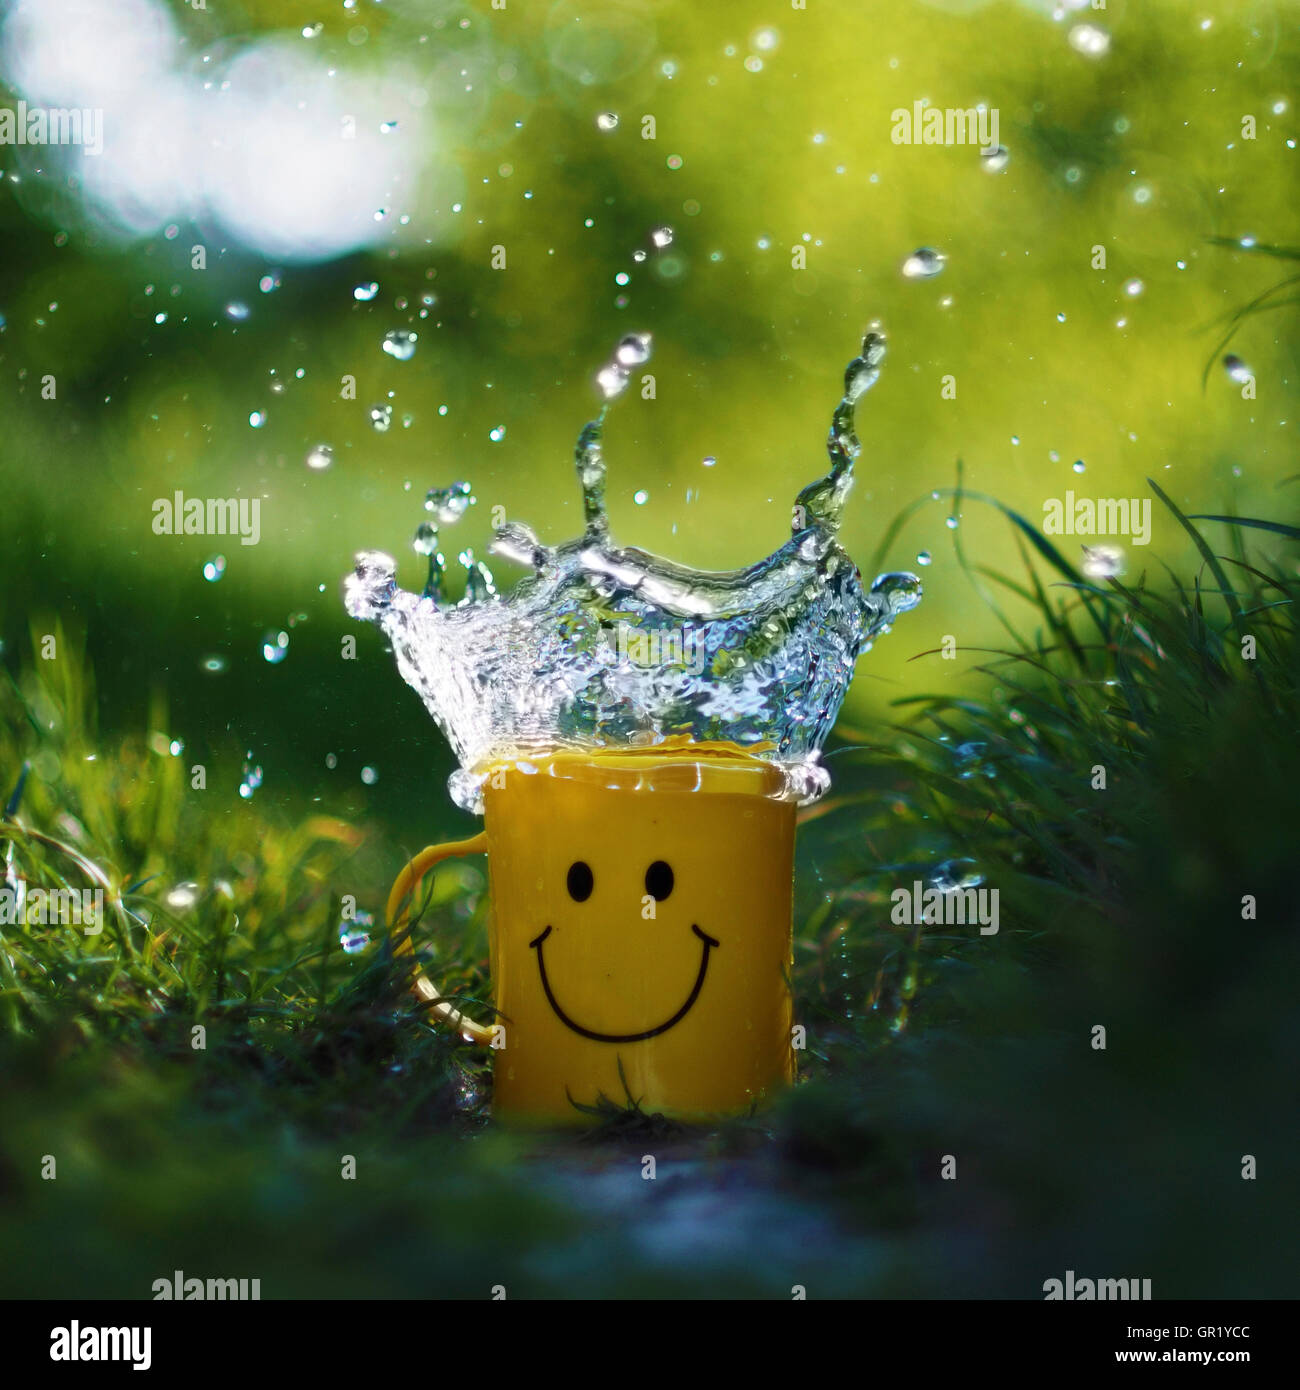 Salpicadura de agua en un vaso de plástico con una cara sonriente. Foto de stock